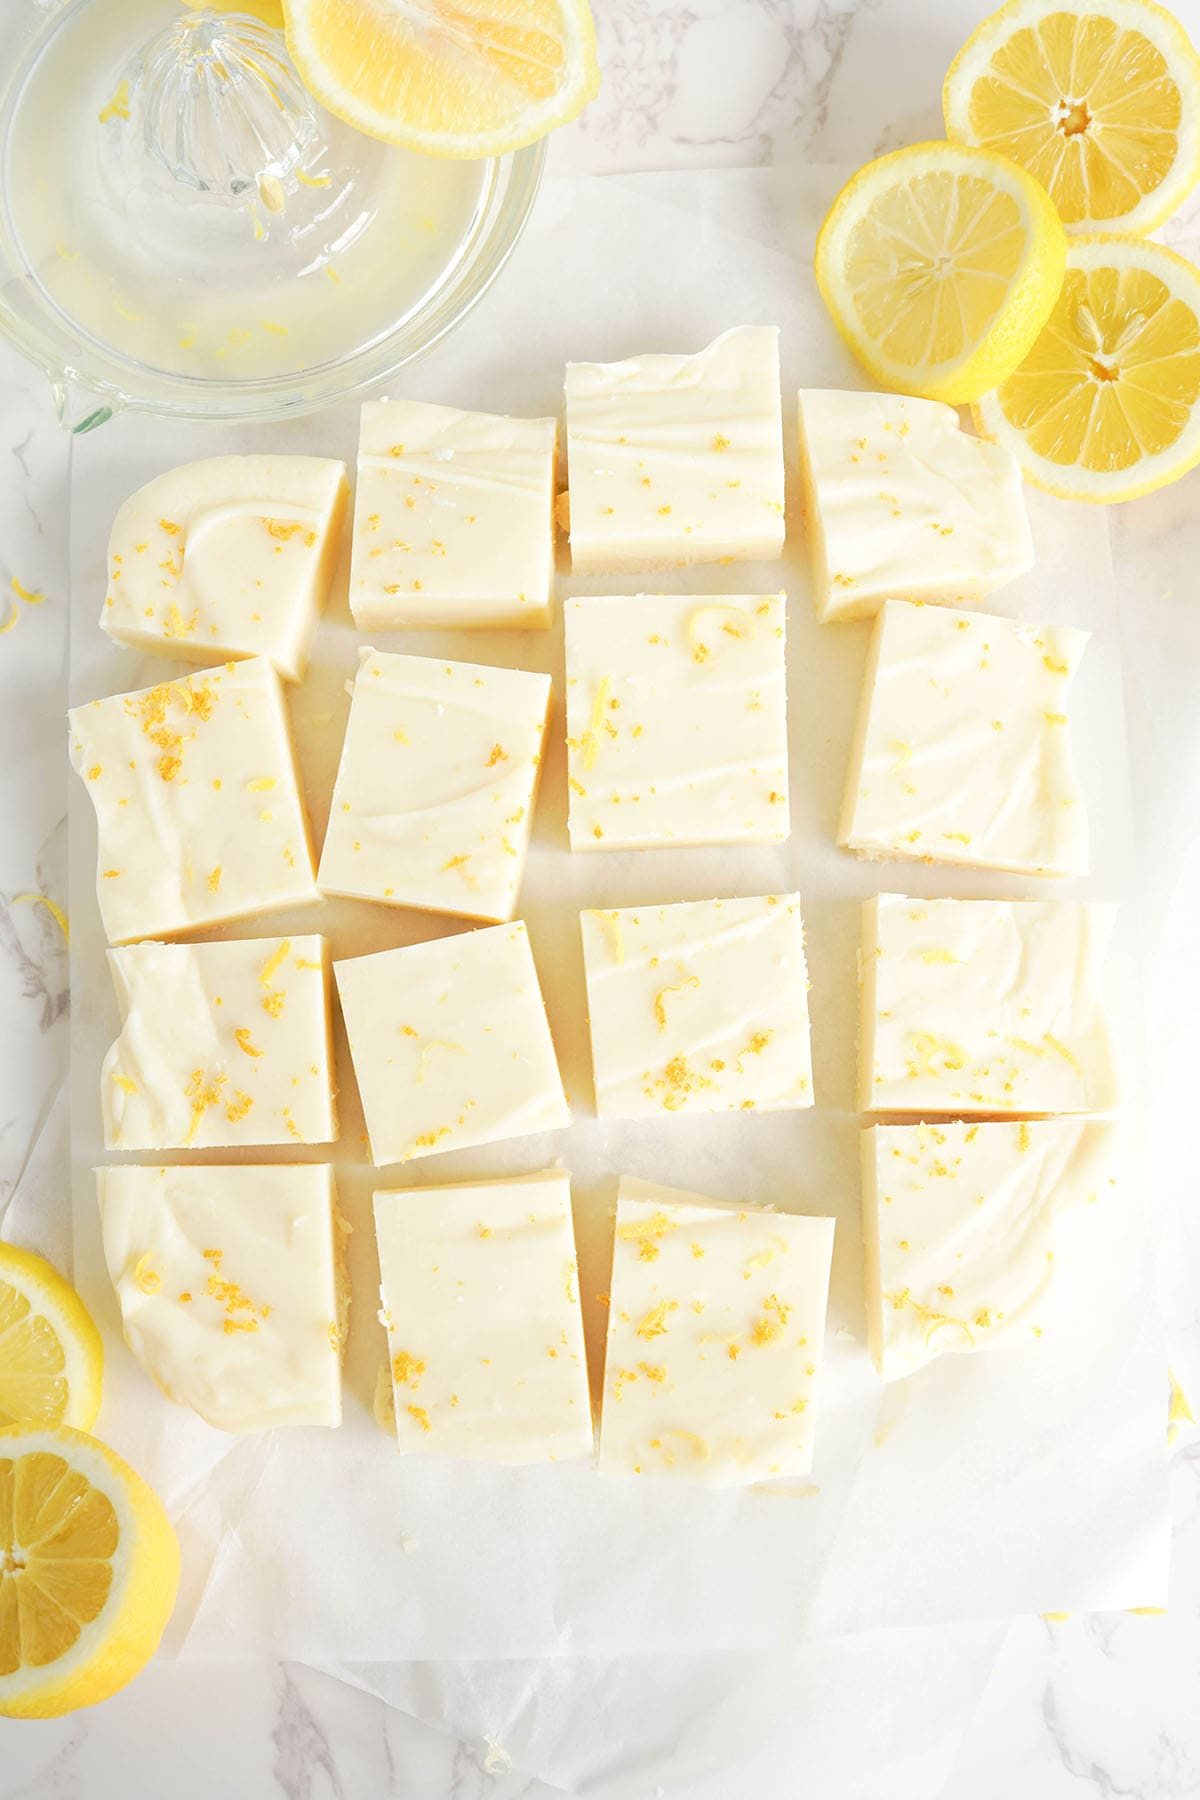 Lemon Fudge cut into squares